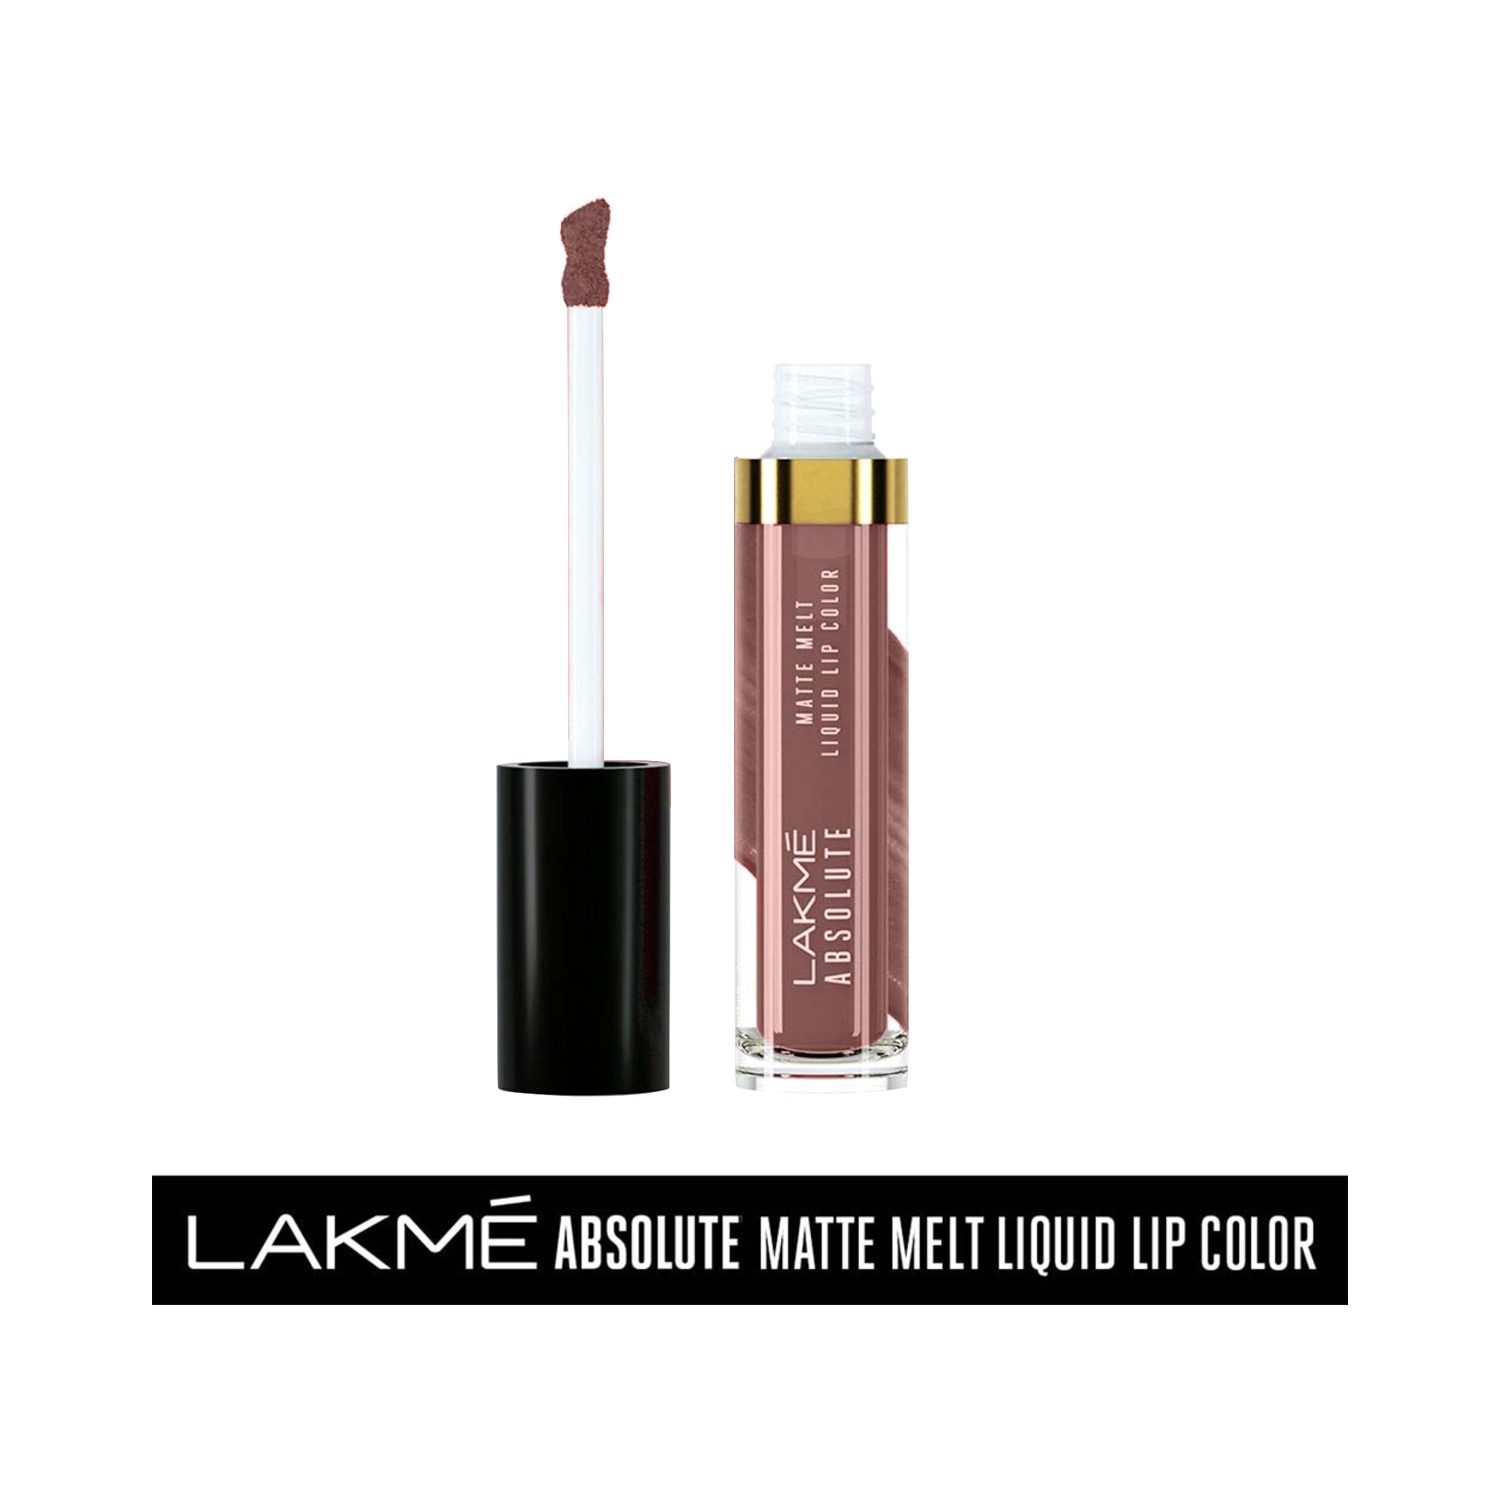 Lakme | Lakme Absolute Matte Melt Liquid Lip Color - Mild Mauve (6ml)